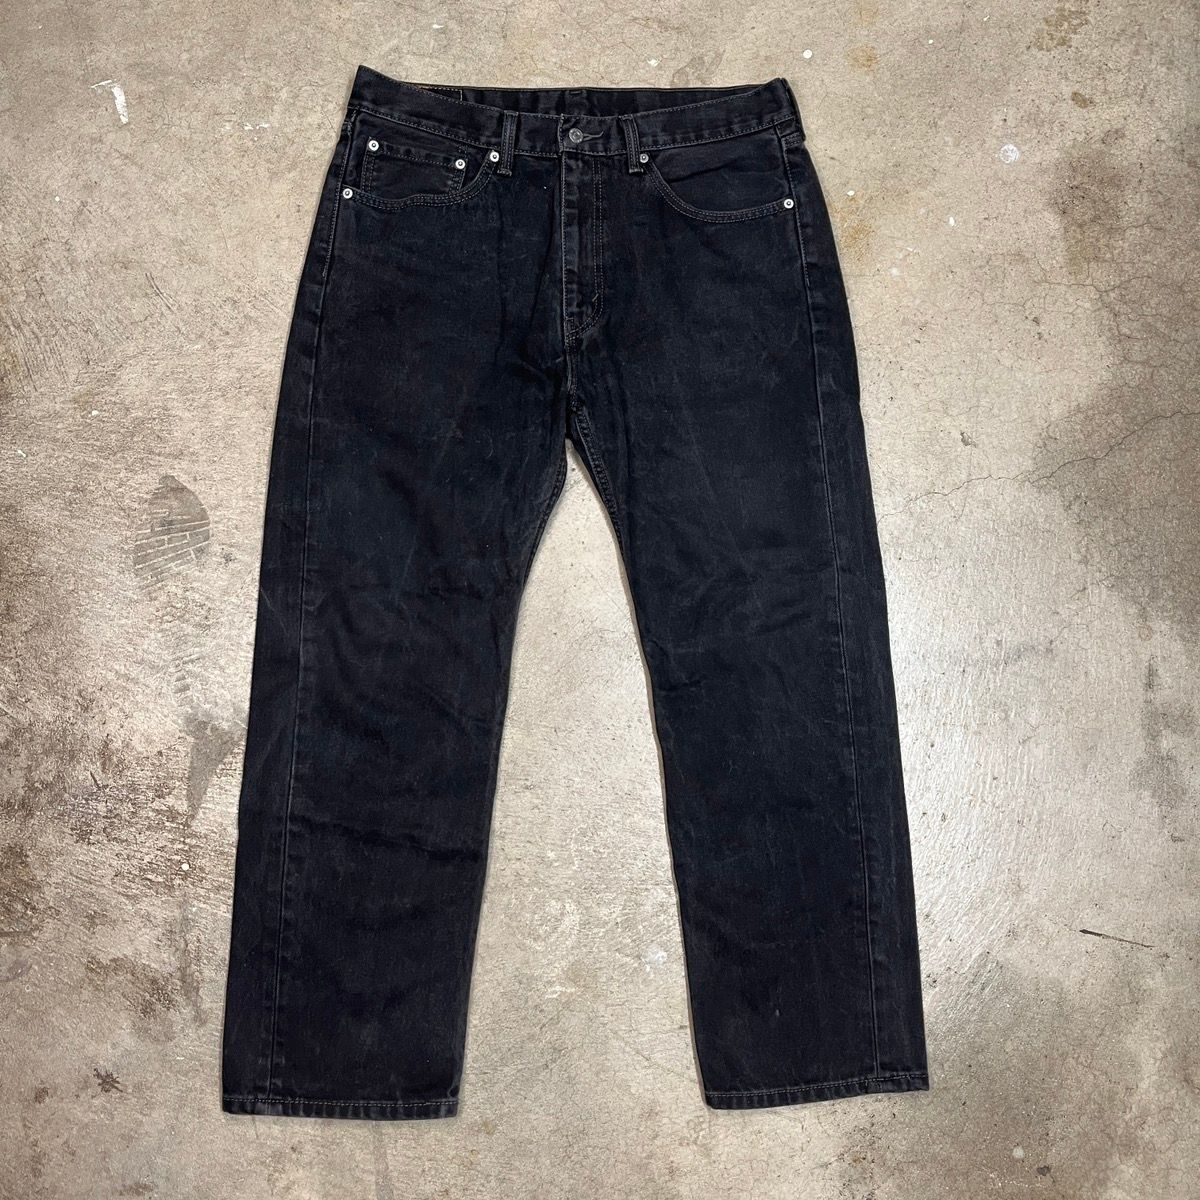 Vintage Levi’s 505 Black Jeans Size 36x30 Size US 36 / EU 52 - 1 Preview